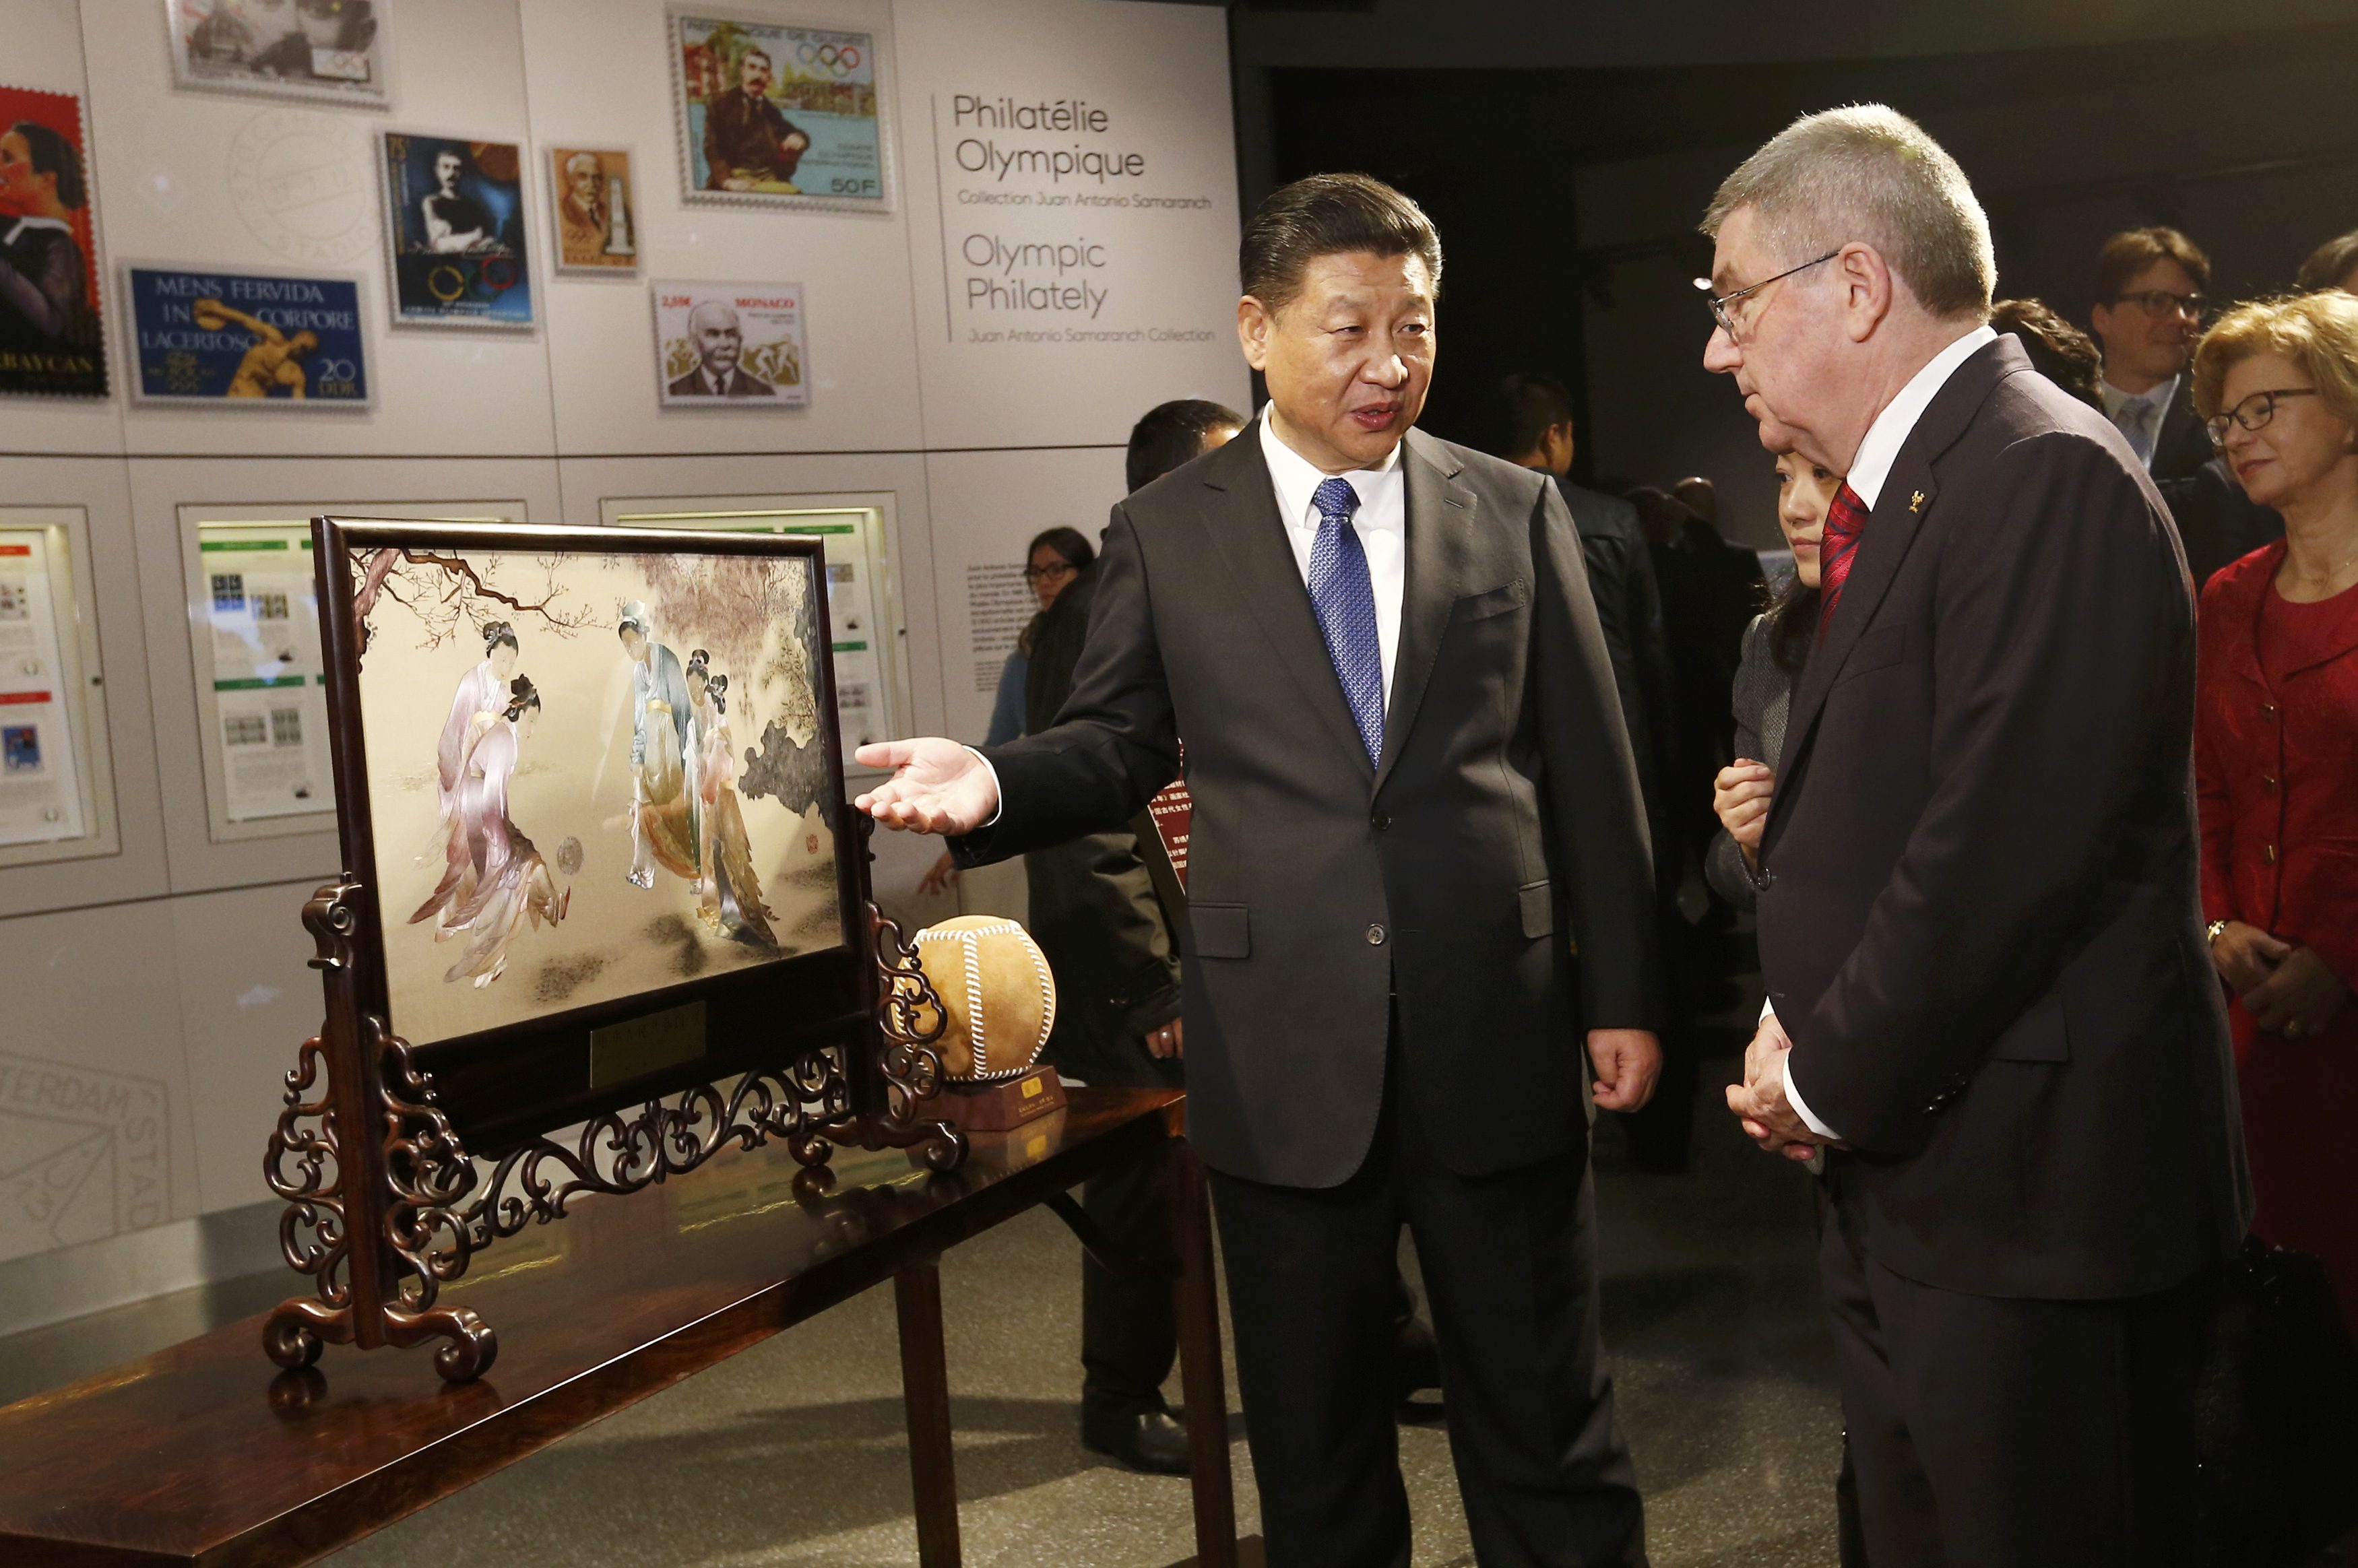 الرئيس الصينى يقف أمام هدية لرئيس اللجنة الأولمبية الدولية فى المتحف الأوليمبى